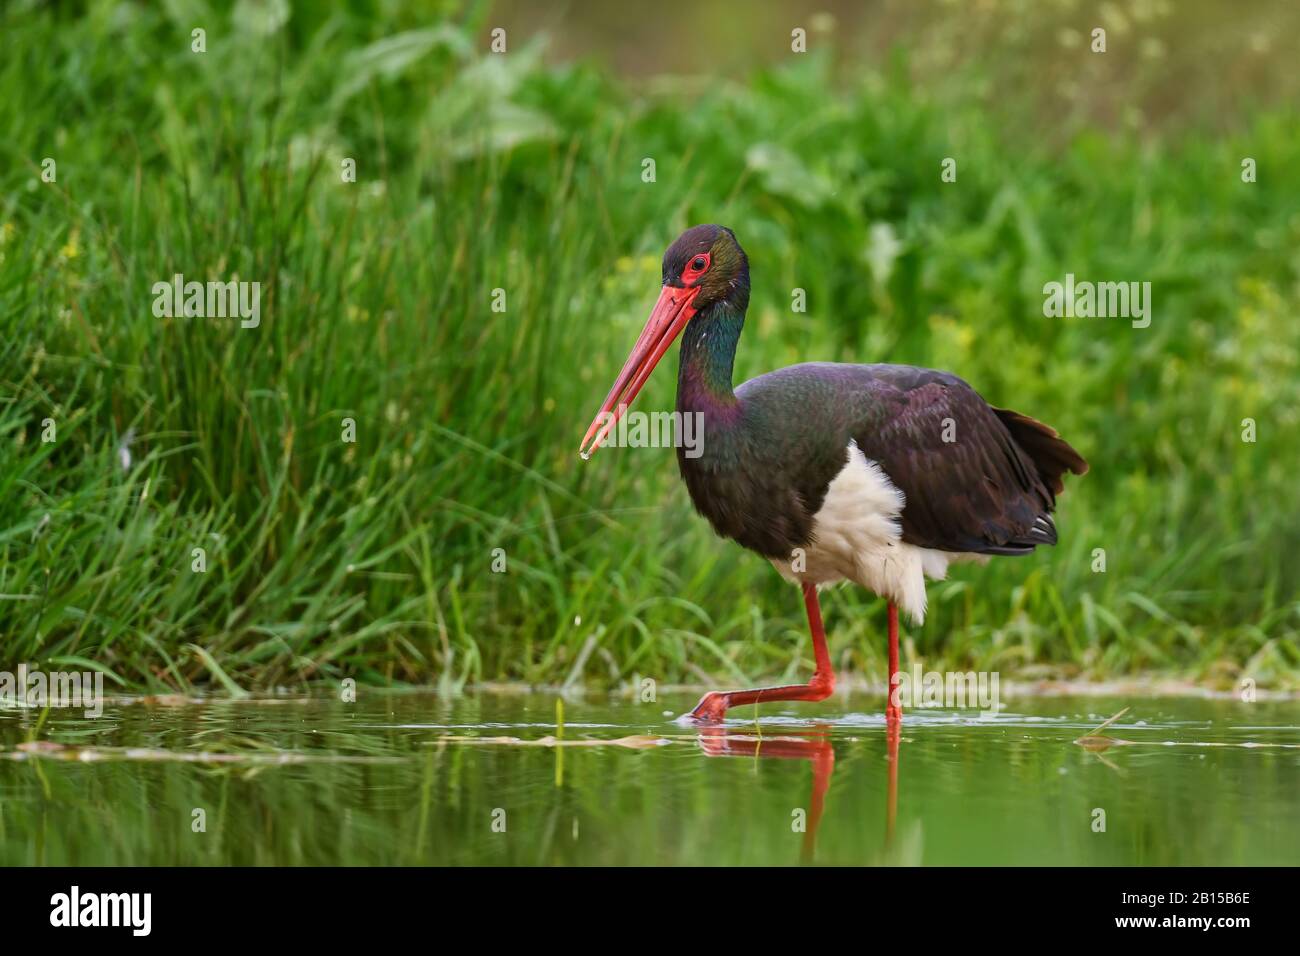 Black Stork - Ciconia nigra, schöner ikonischer Wasservogel aus europäischen Süßwasser, Hortobagy, Ungarn. Stockfoto